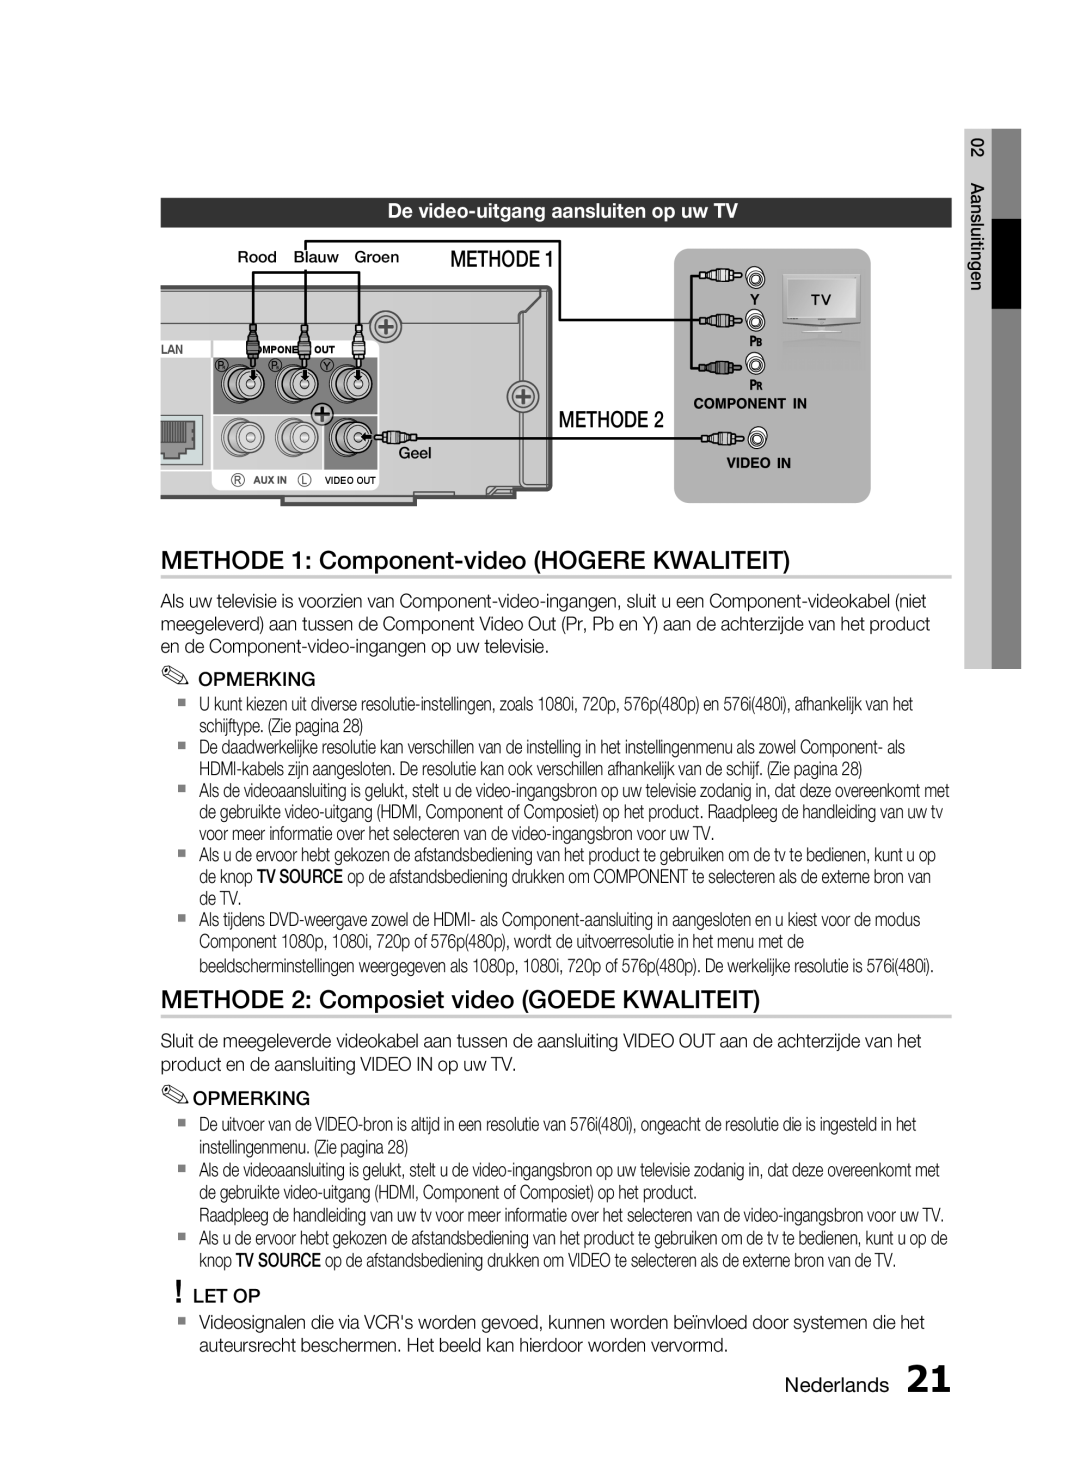 Samsung HT-C6200/XEF manual METHODE 1 Component-video HOGERE KWALITEIT, METHODE 2 Composiet video GOEDE KWALITEIT, Methode 